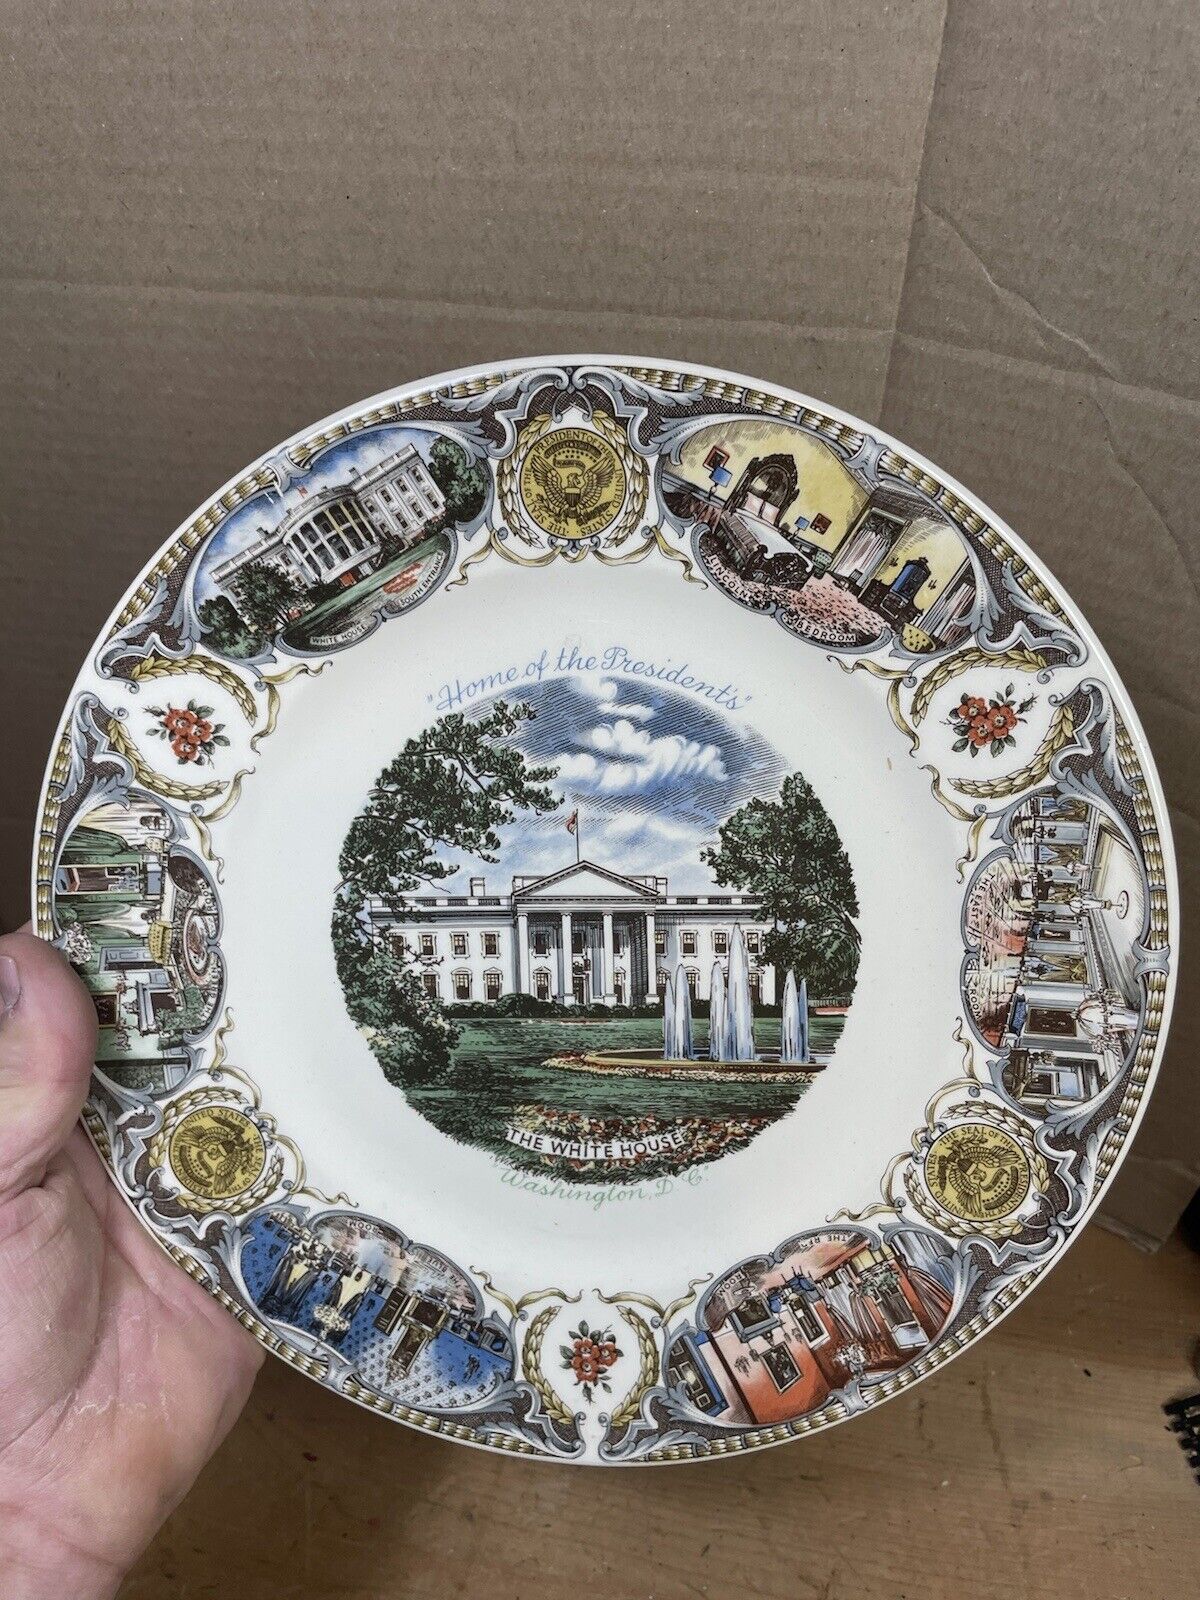 The White House Washington DC Capsco 1961 Souvenir Collectors Plate 10 3/4”